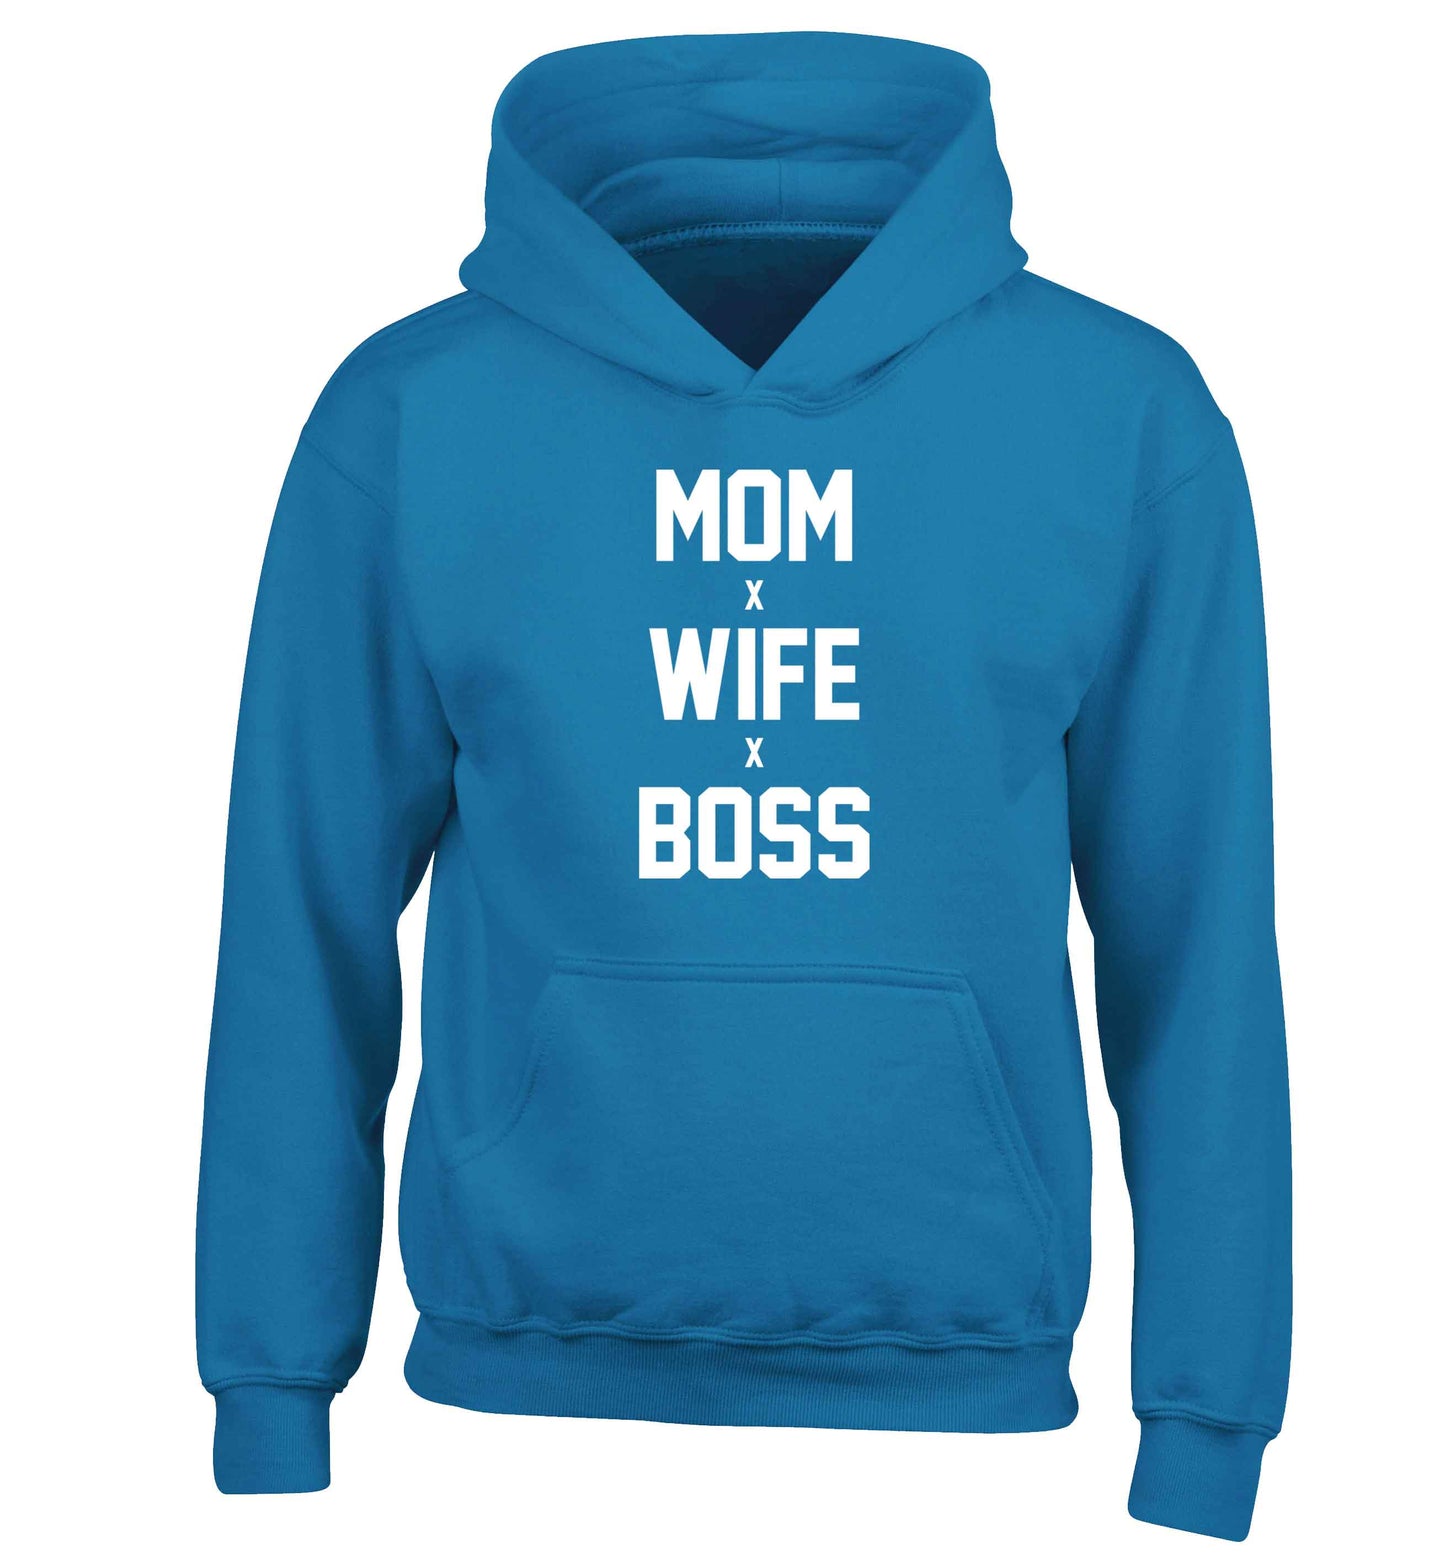 Mum wife boss children's blue hoodie 12-13 Years